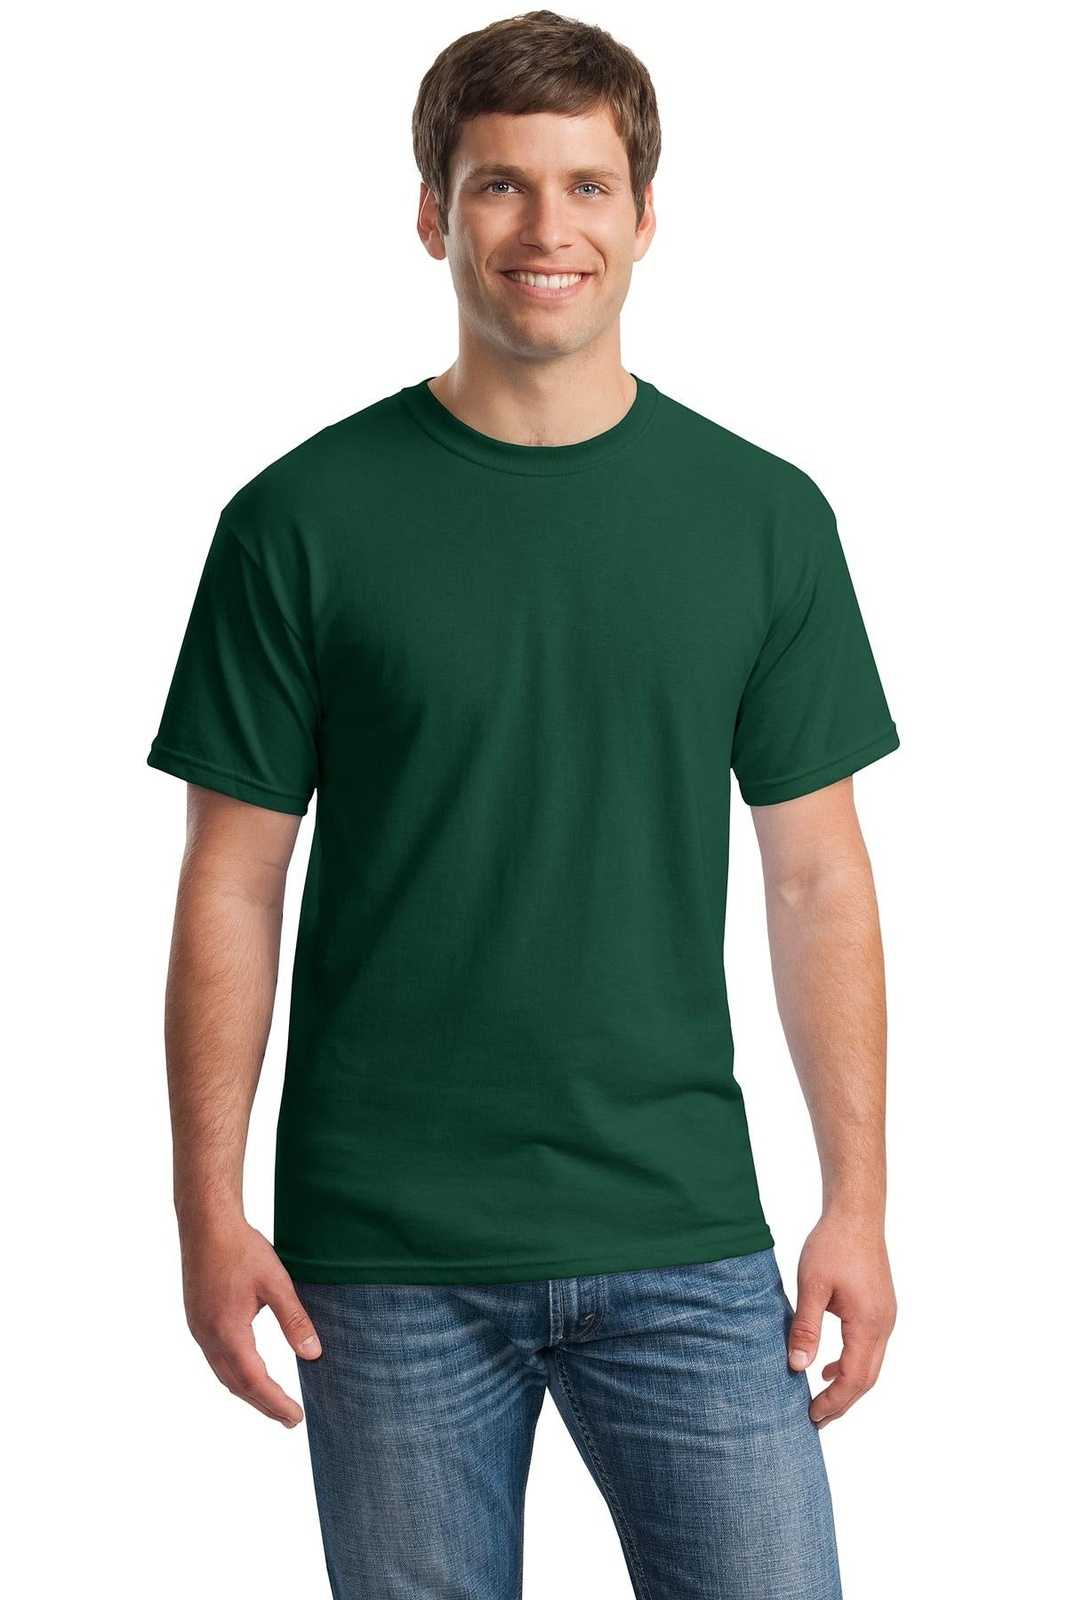 Gildan 5000 Heavy Cotton 100% Cotton T-Shirt - Forest - HIT a Double